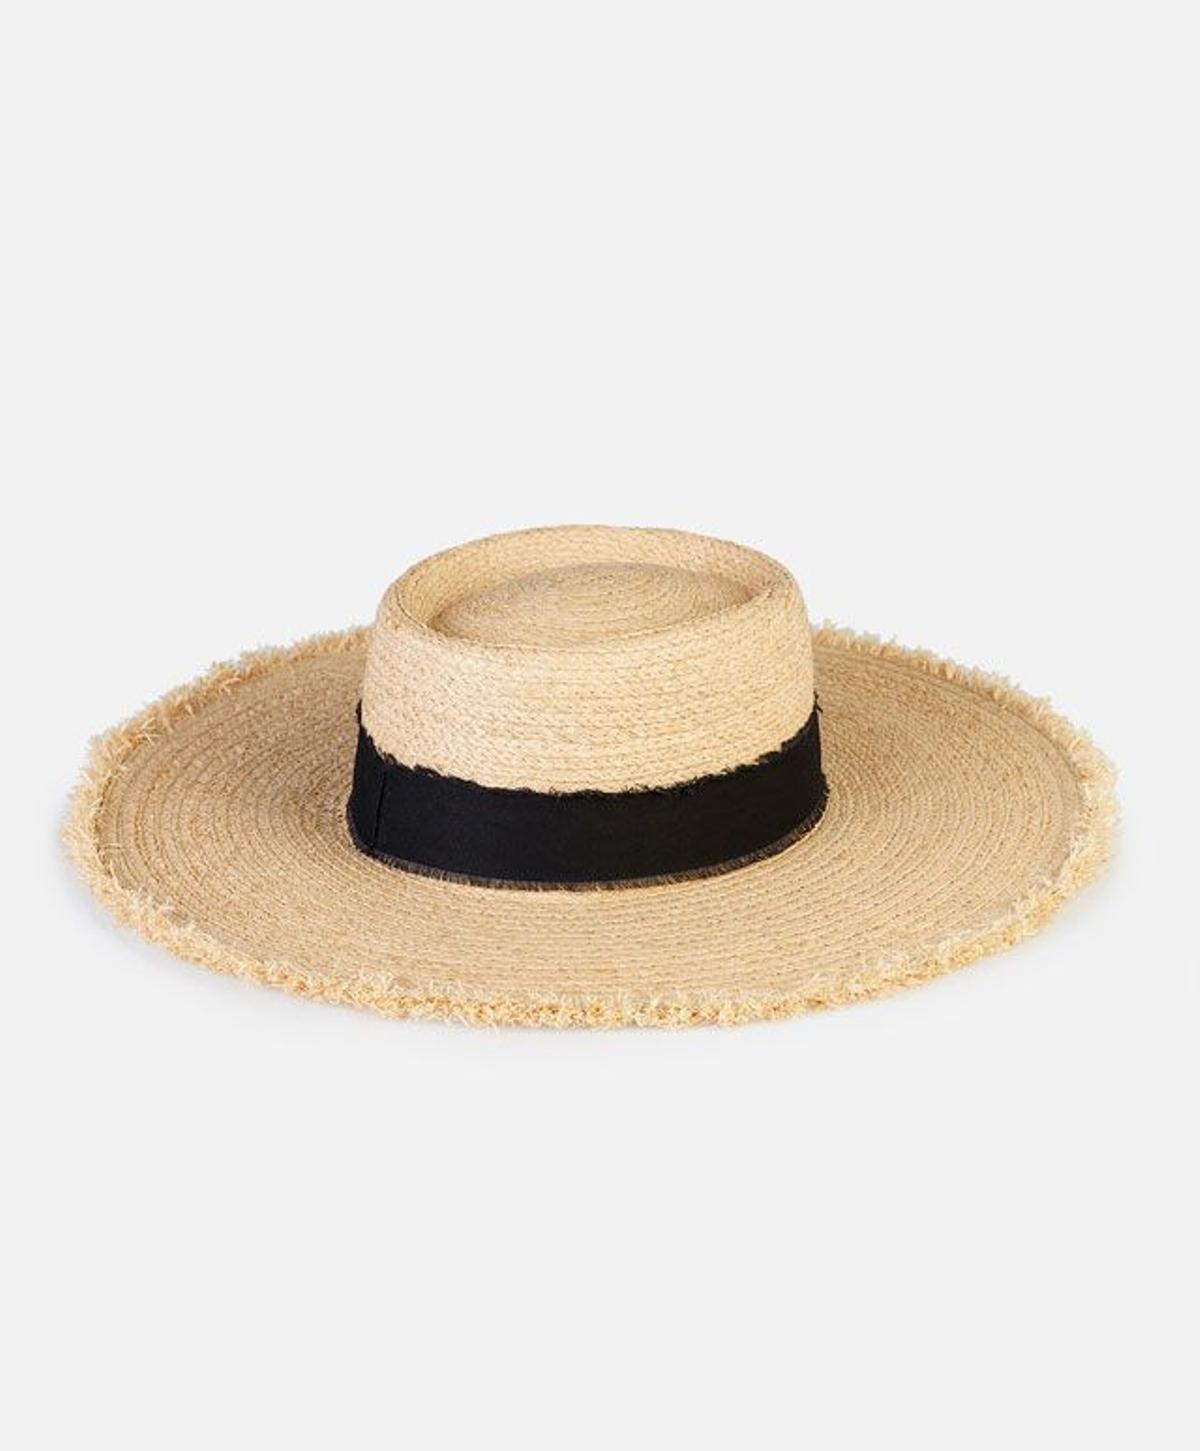 Rebajas, sombrero de rafia de Oysho (9,99€)